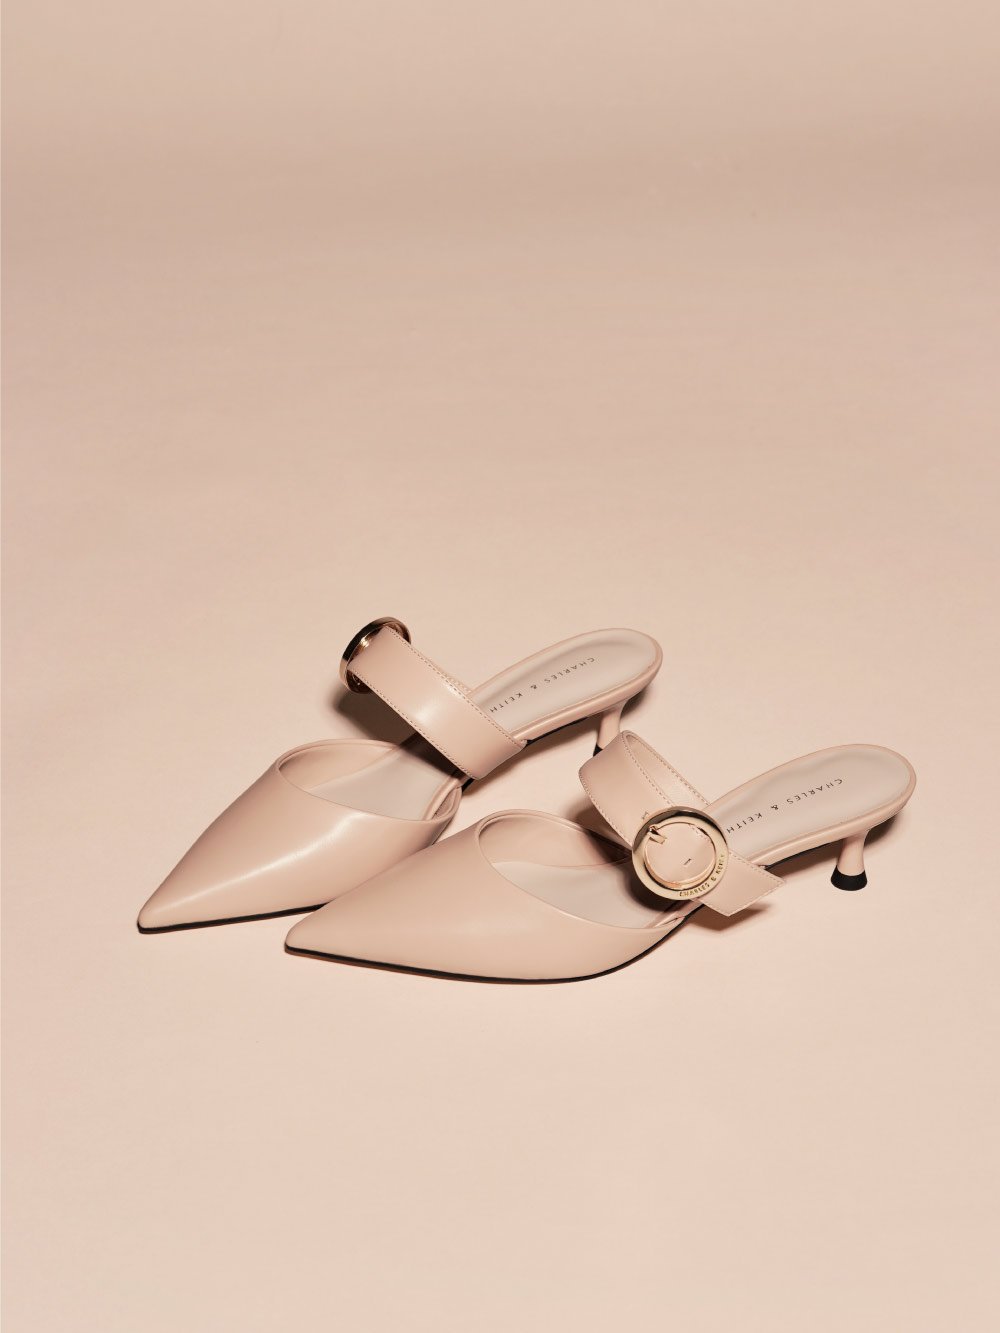 Sepatu spool heel mules wanita buckled strap warna nude – CHARLES & KEITH